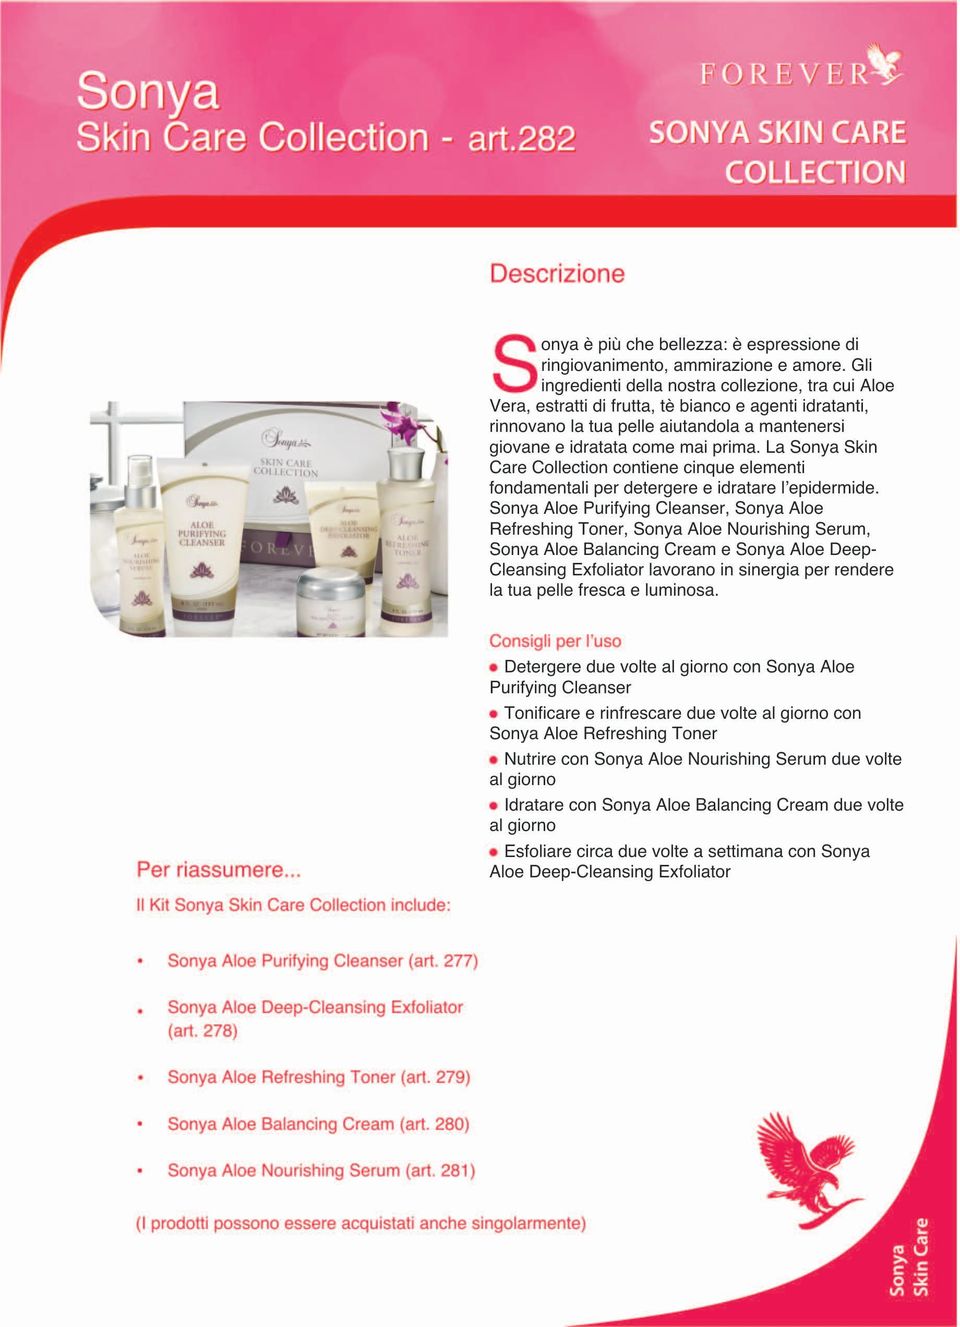 La Sonya Skin Care Collection contiene cinque elementi fondamentali per detergere e idratare l'epidermide.